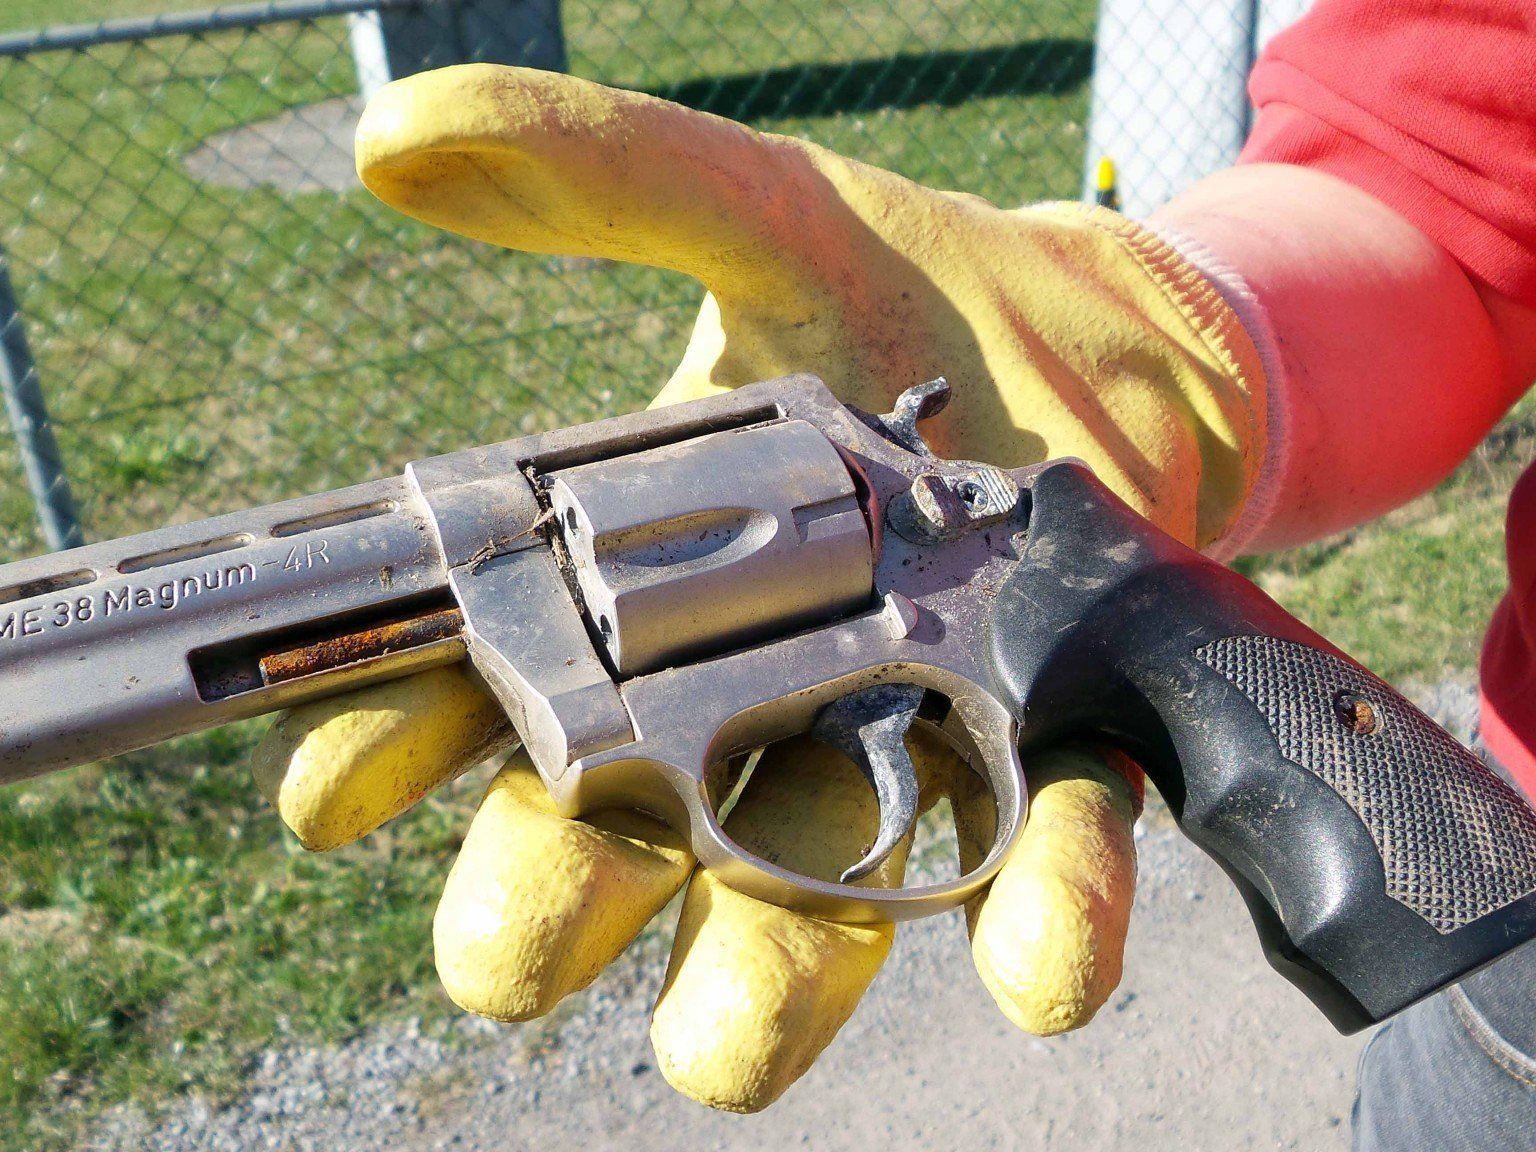 Außergewöhnlicher Fund bei der Flurreinigung in Nüziders: ein illegal entsorgter Magnum Revolver.